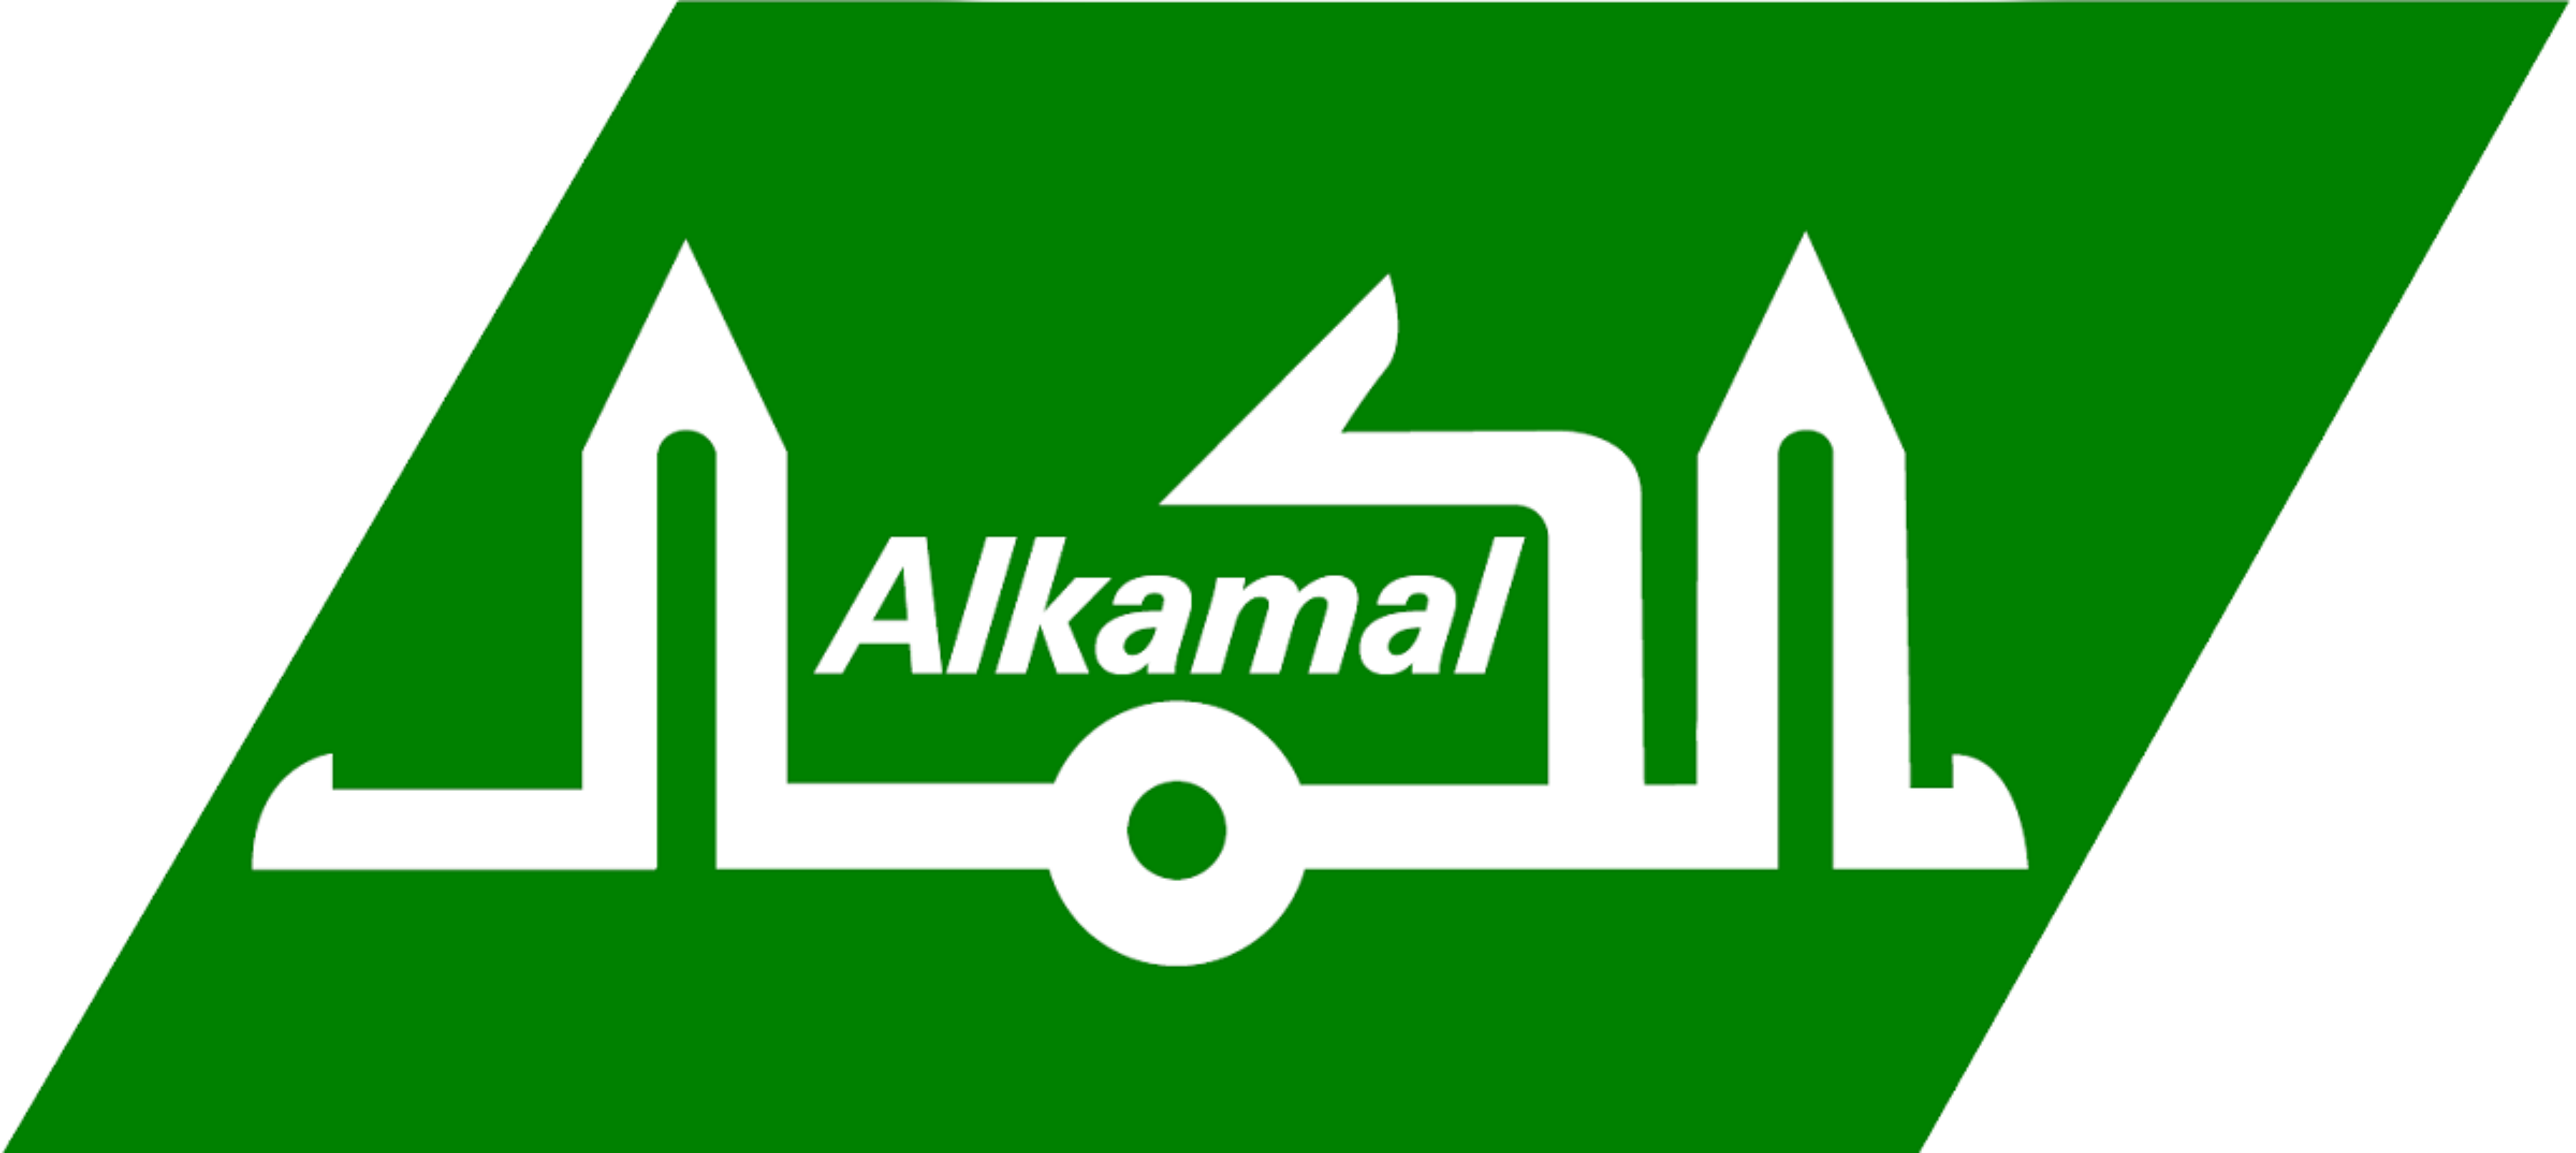 Al-Kamal